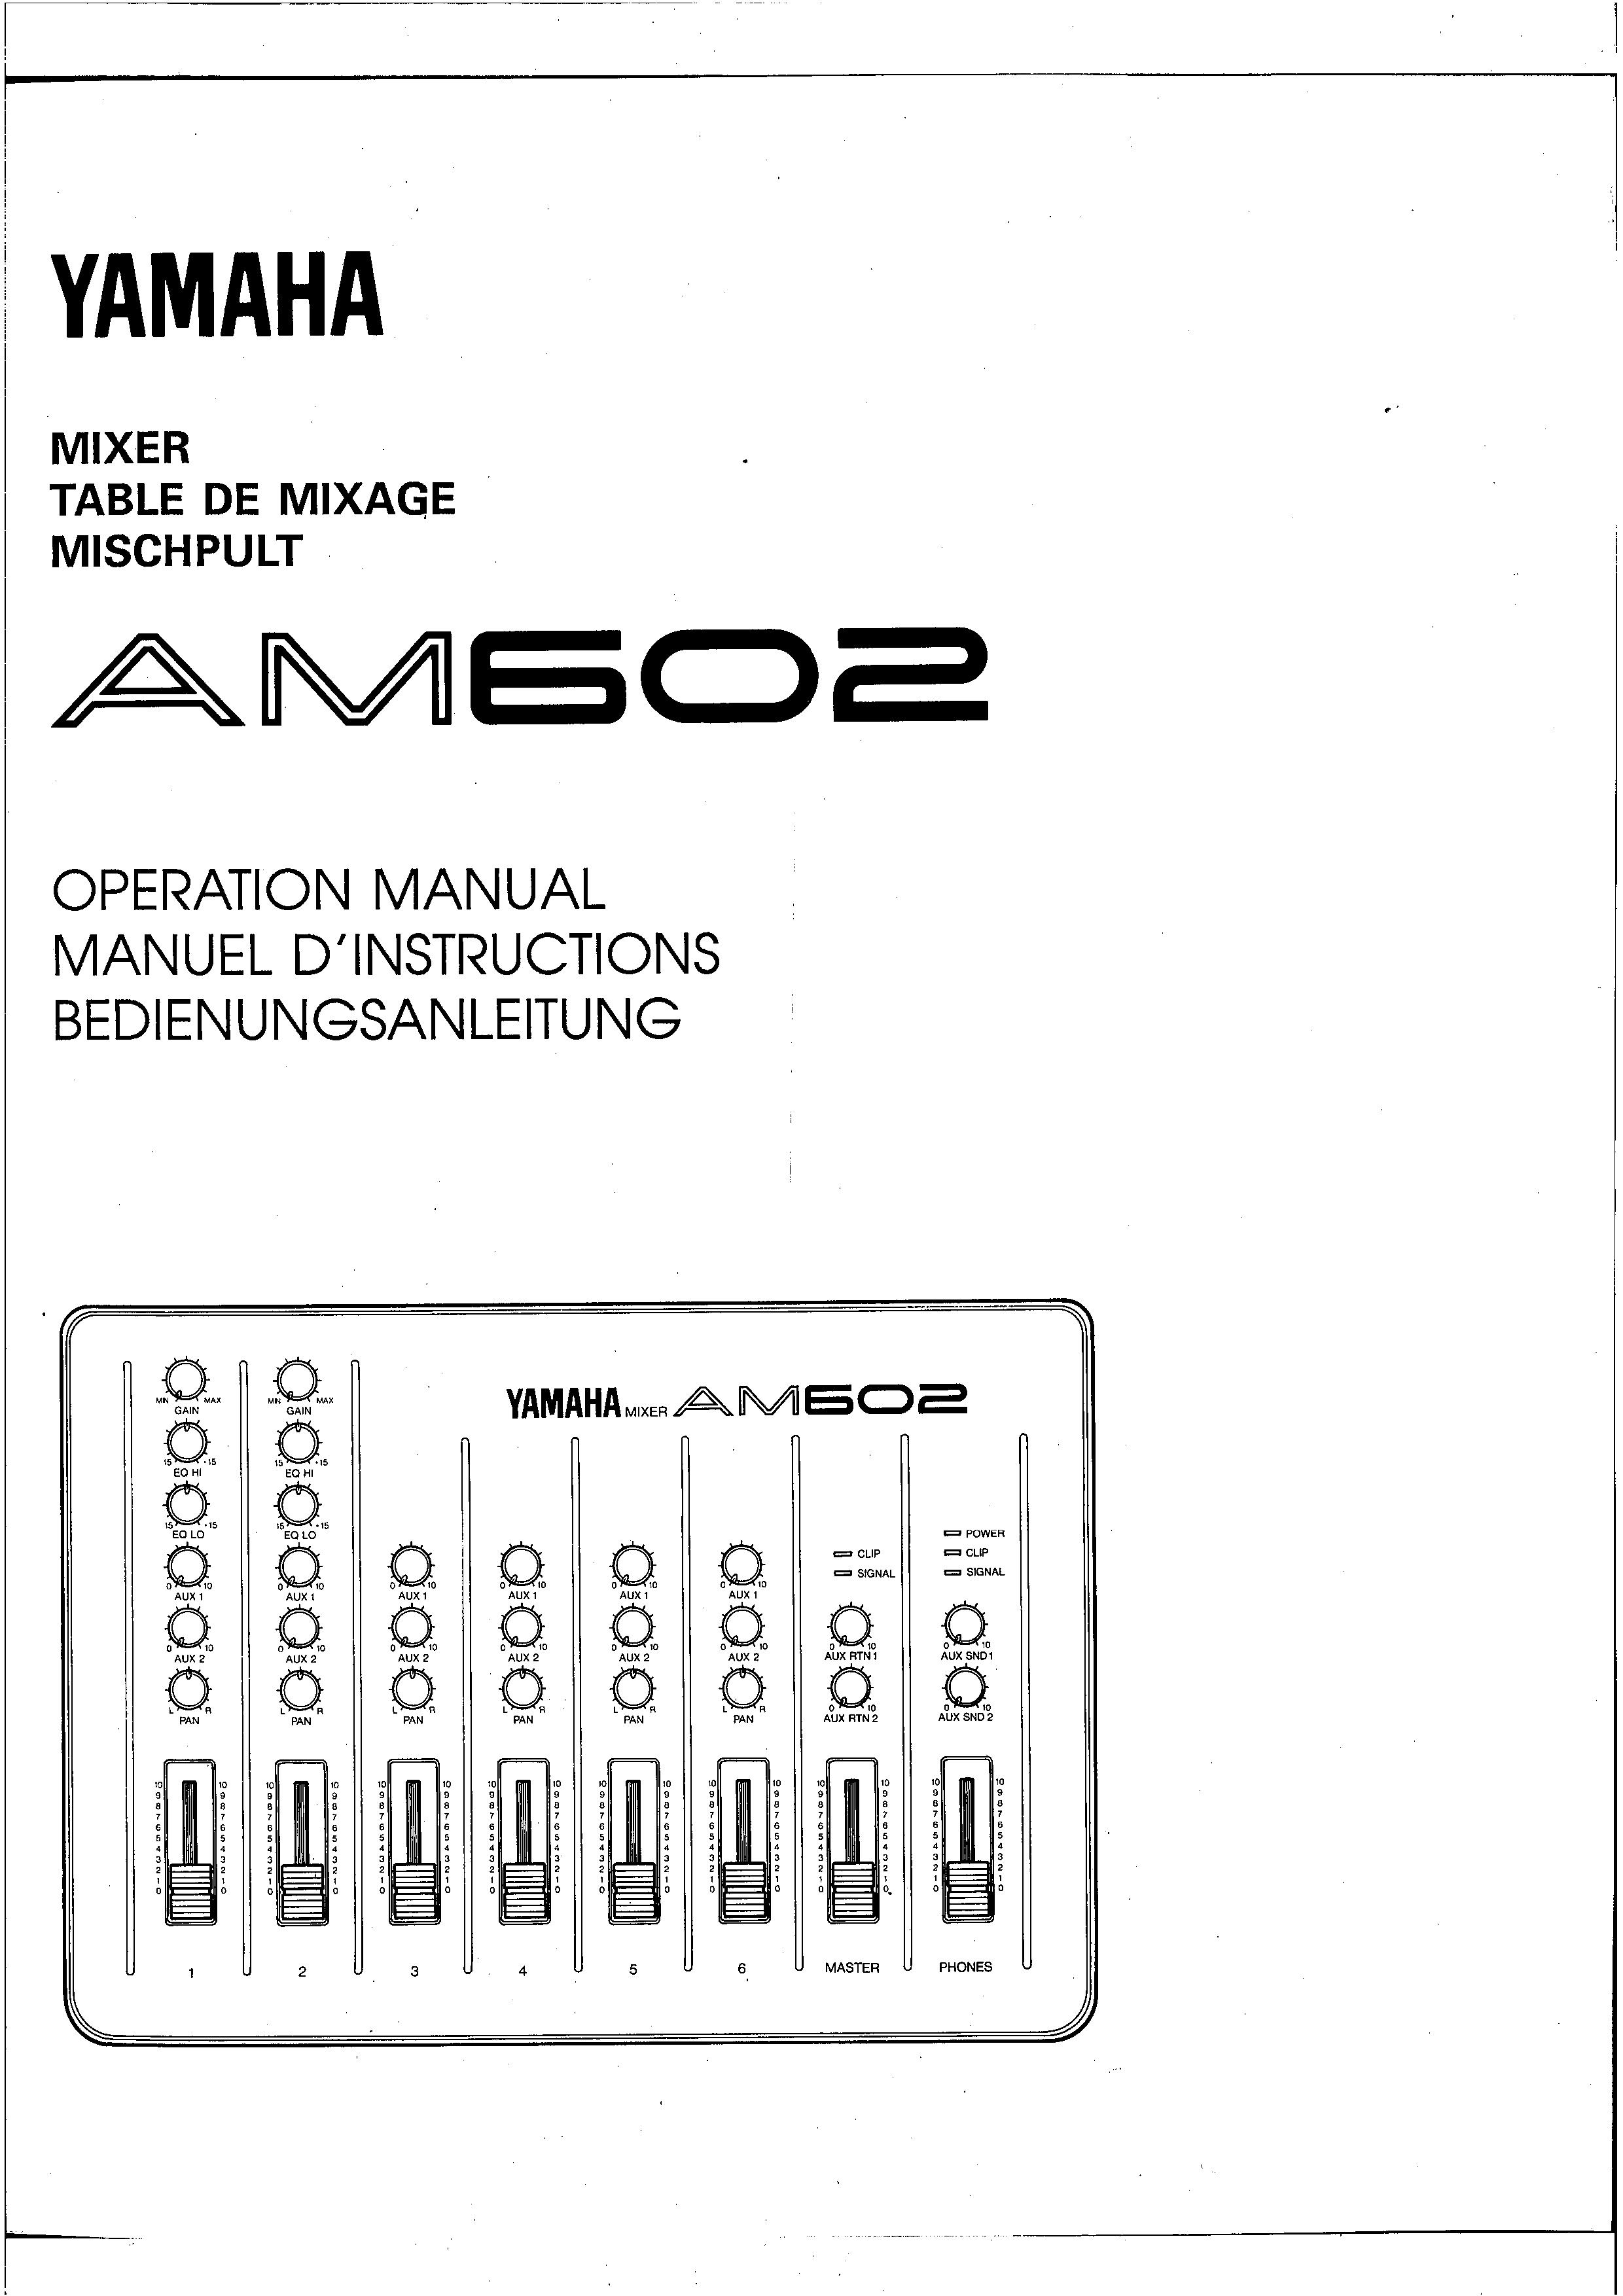 Yamaha AM602 Music Mixer User Manual